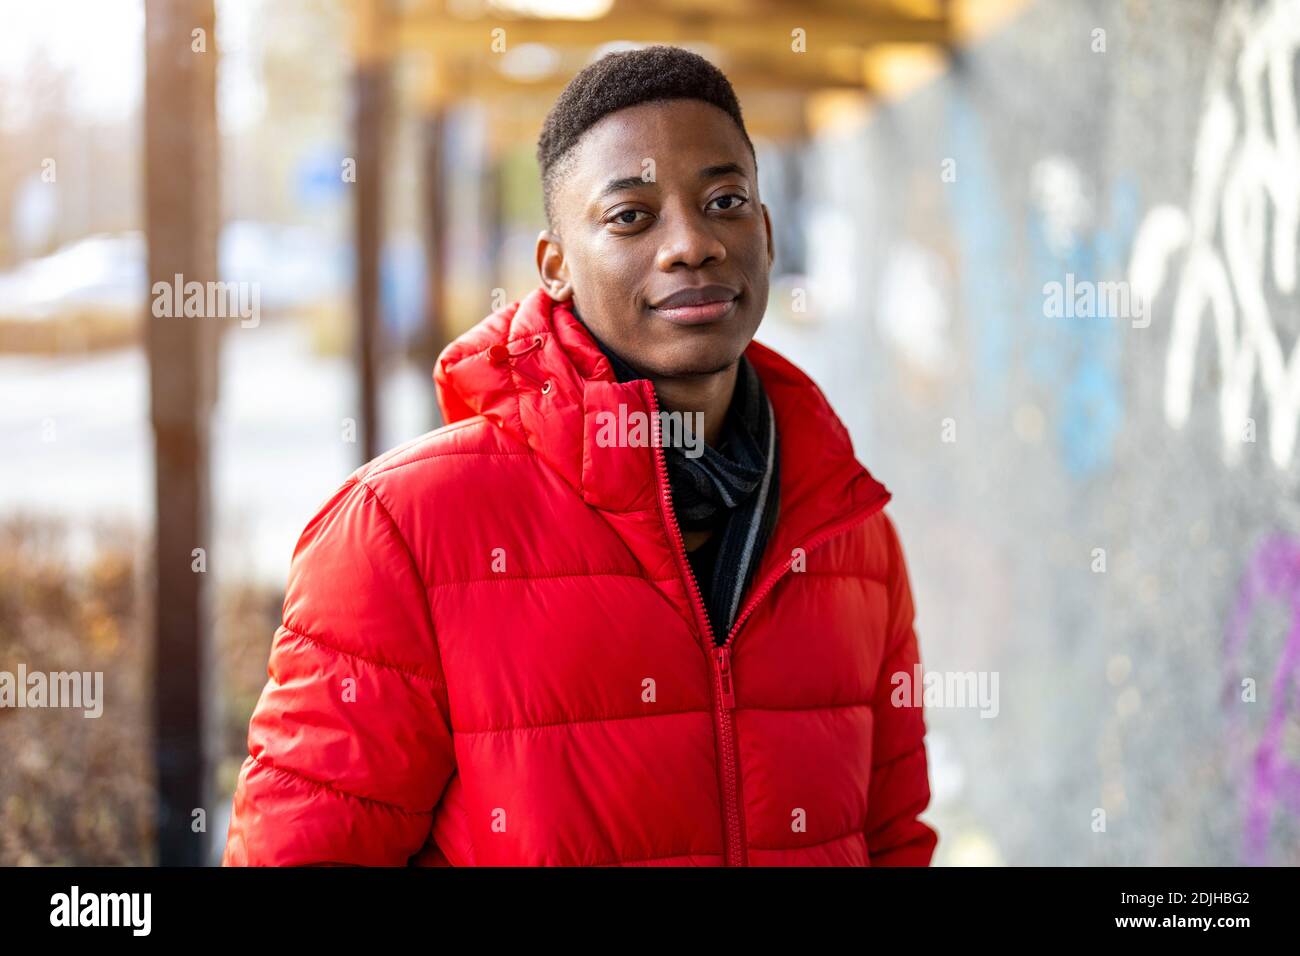 Jeune homme noir debout dans une rue de ville Banque D'Images